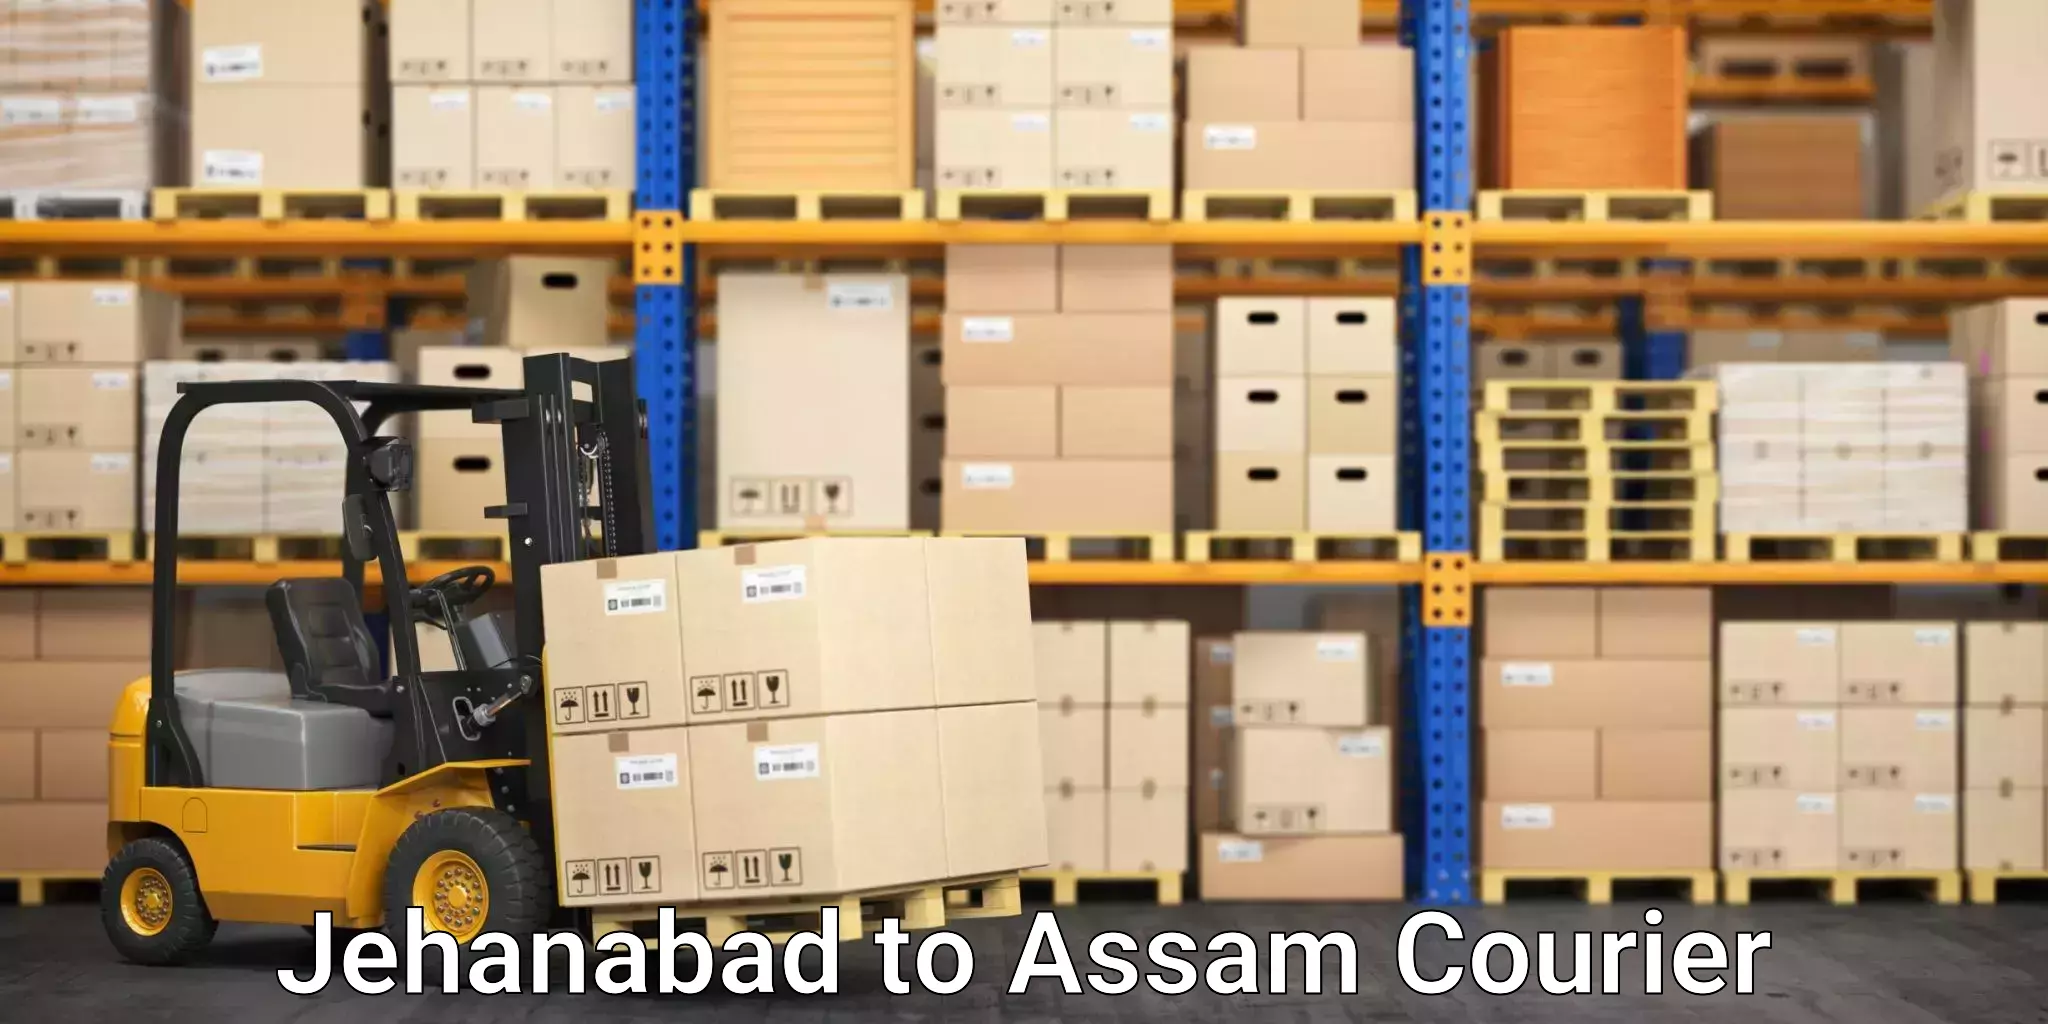 Efficient moving company Jehanabad to Nagaon